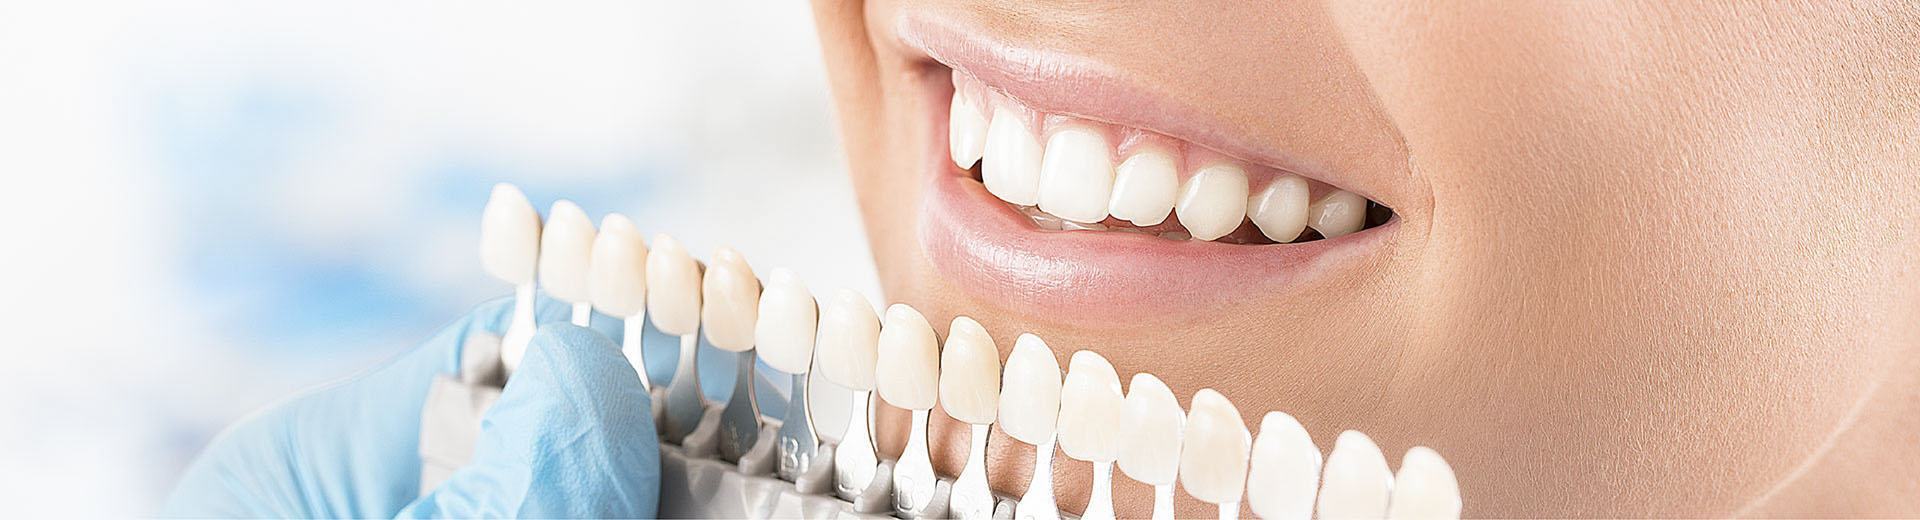 Dán răng sứ veneer loại nào tốt nhất?